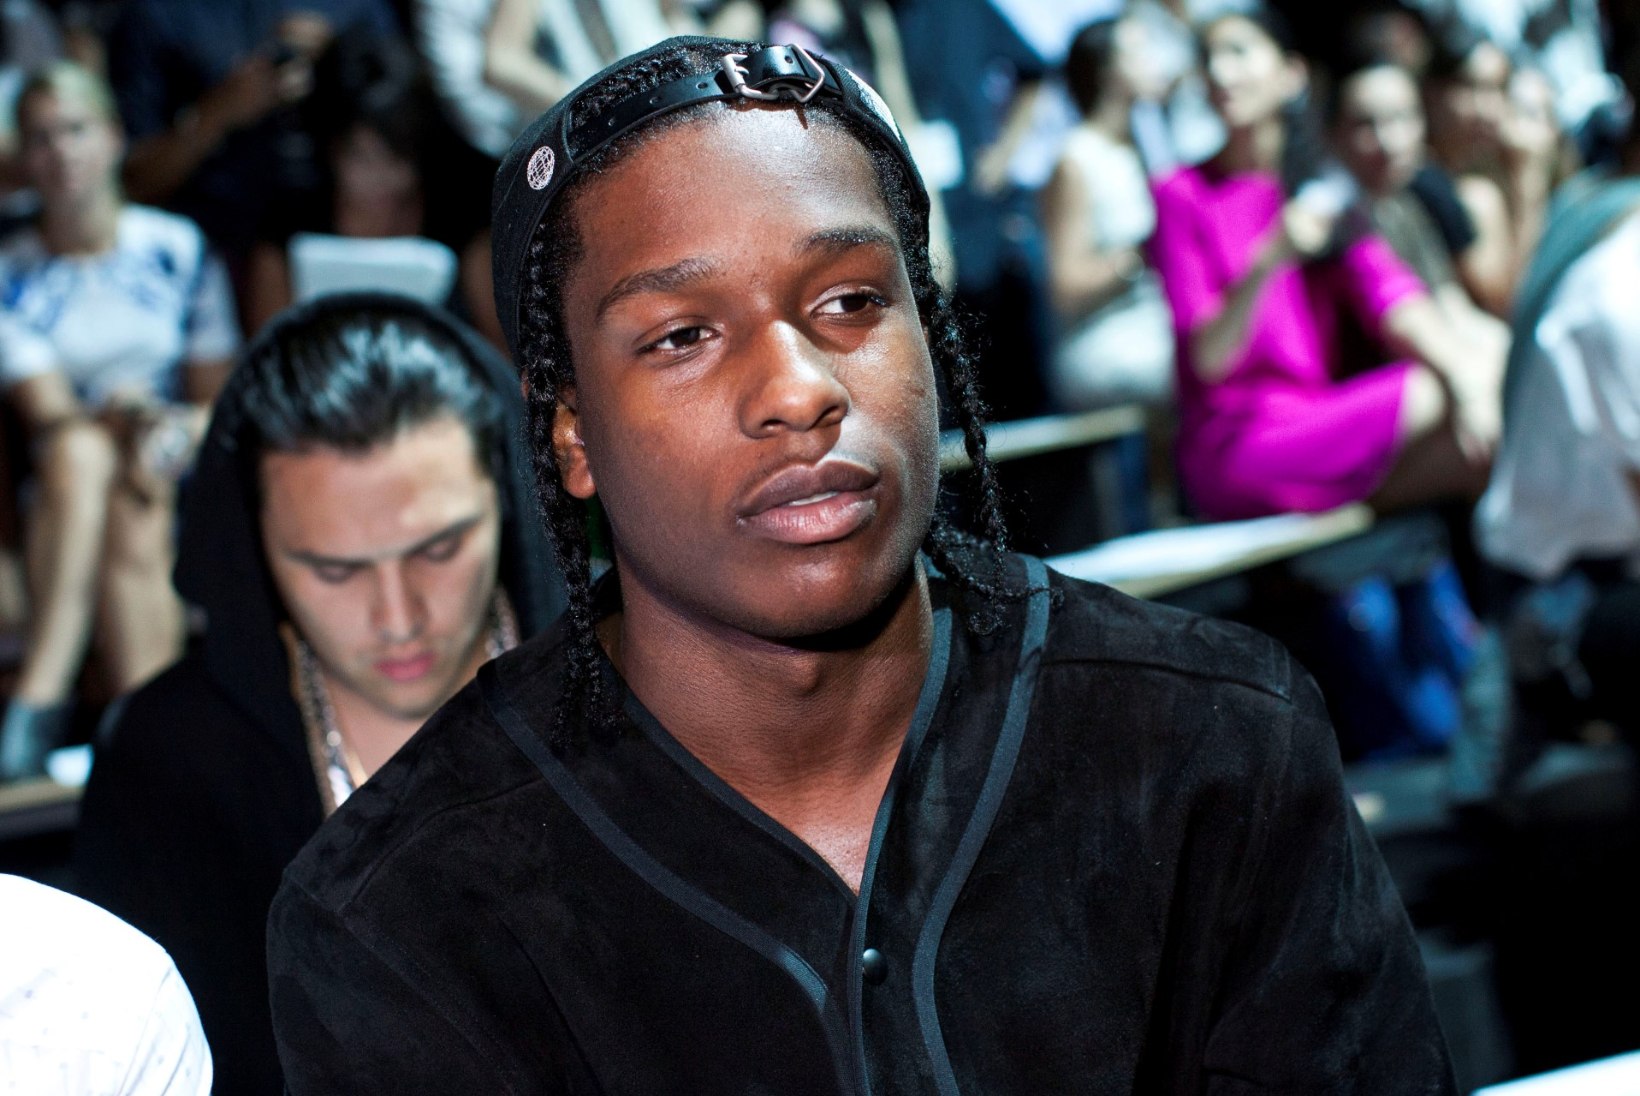 Stockholmis tulistati A$AP Rocky rootslasest advokaati 